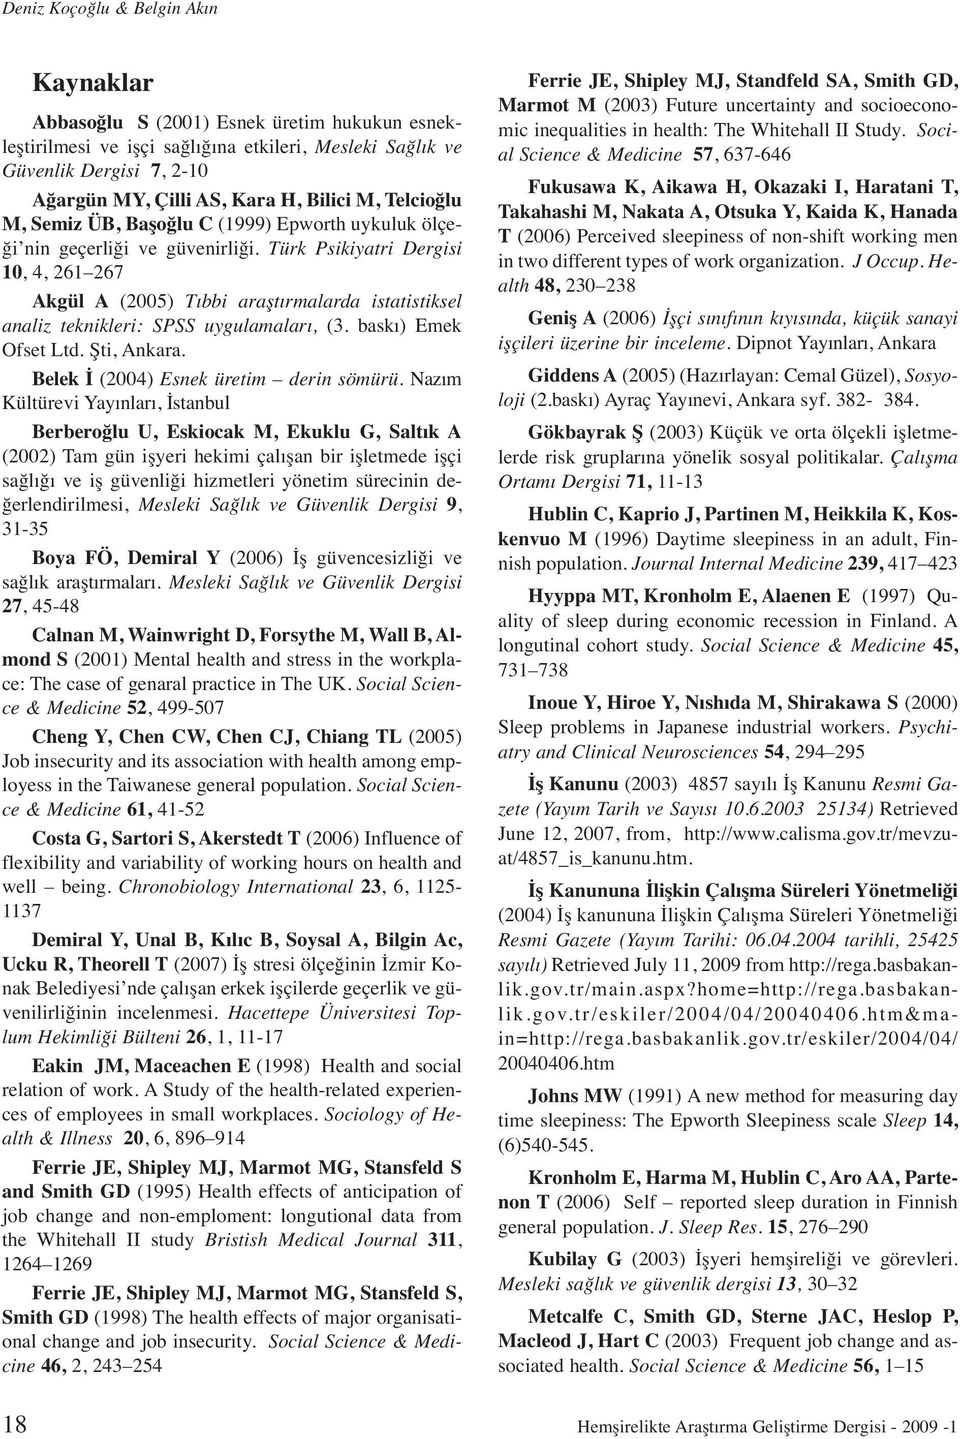 Türk Psikiyatri Dergisi 10, 4, 261 267 Akgül A (2005) Tıbbi araştırmalarda istatistiksel analiz teknikleri: SPSS uygulamaları, (3. baskı) Emek Ofset Ltd. Şti, Ankara.